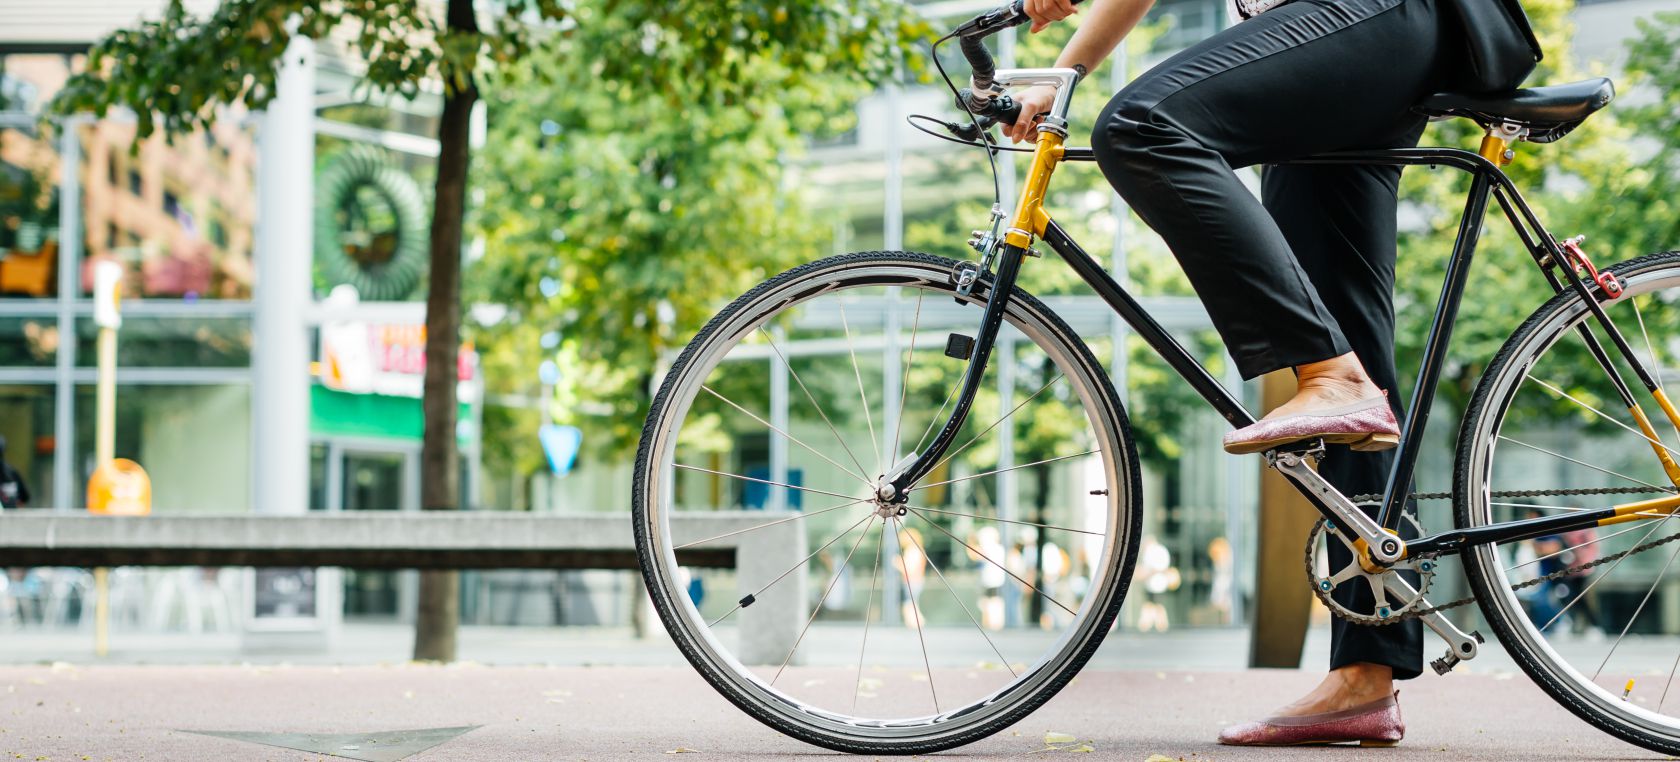 Las bicicletas son para el verano… y para todo el año